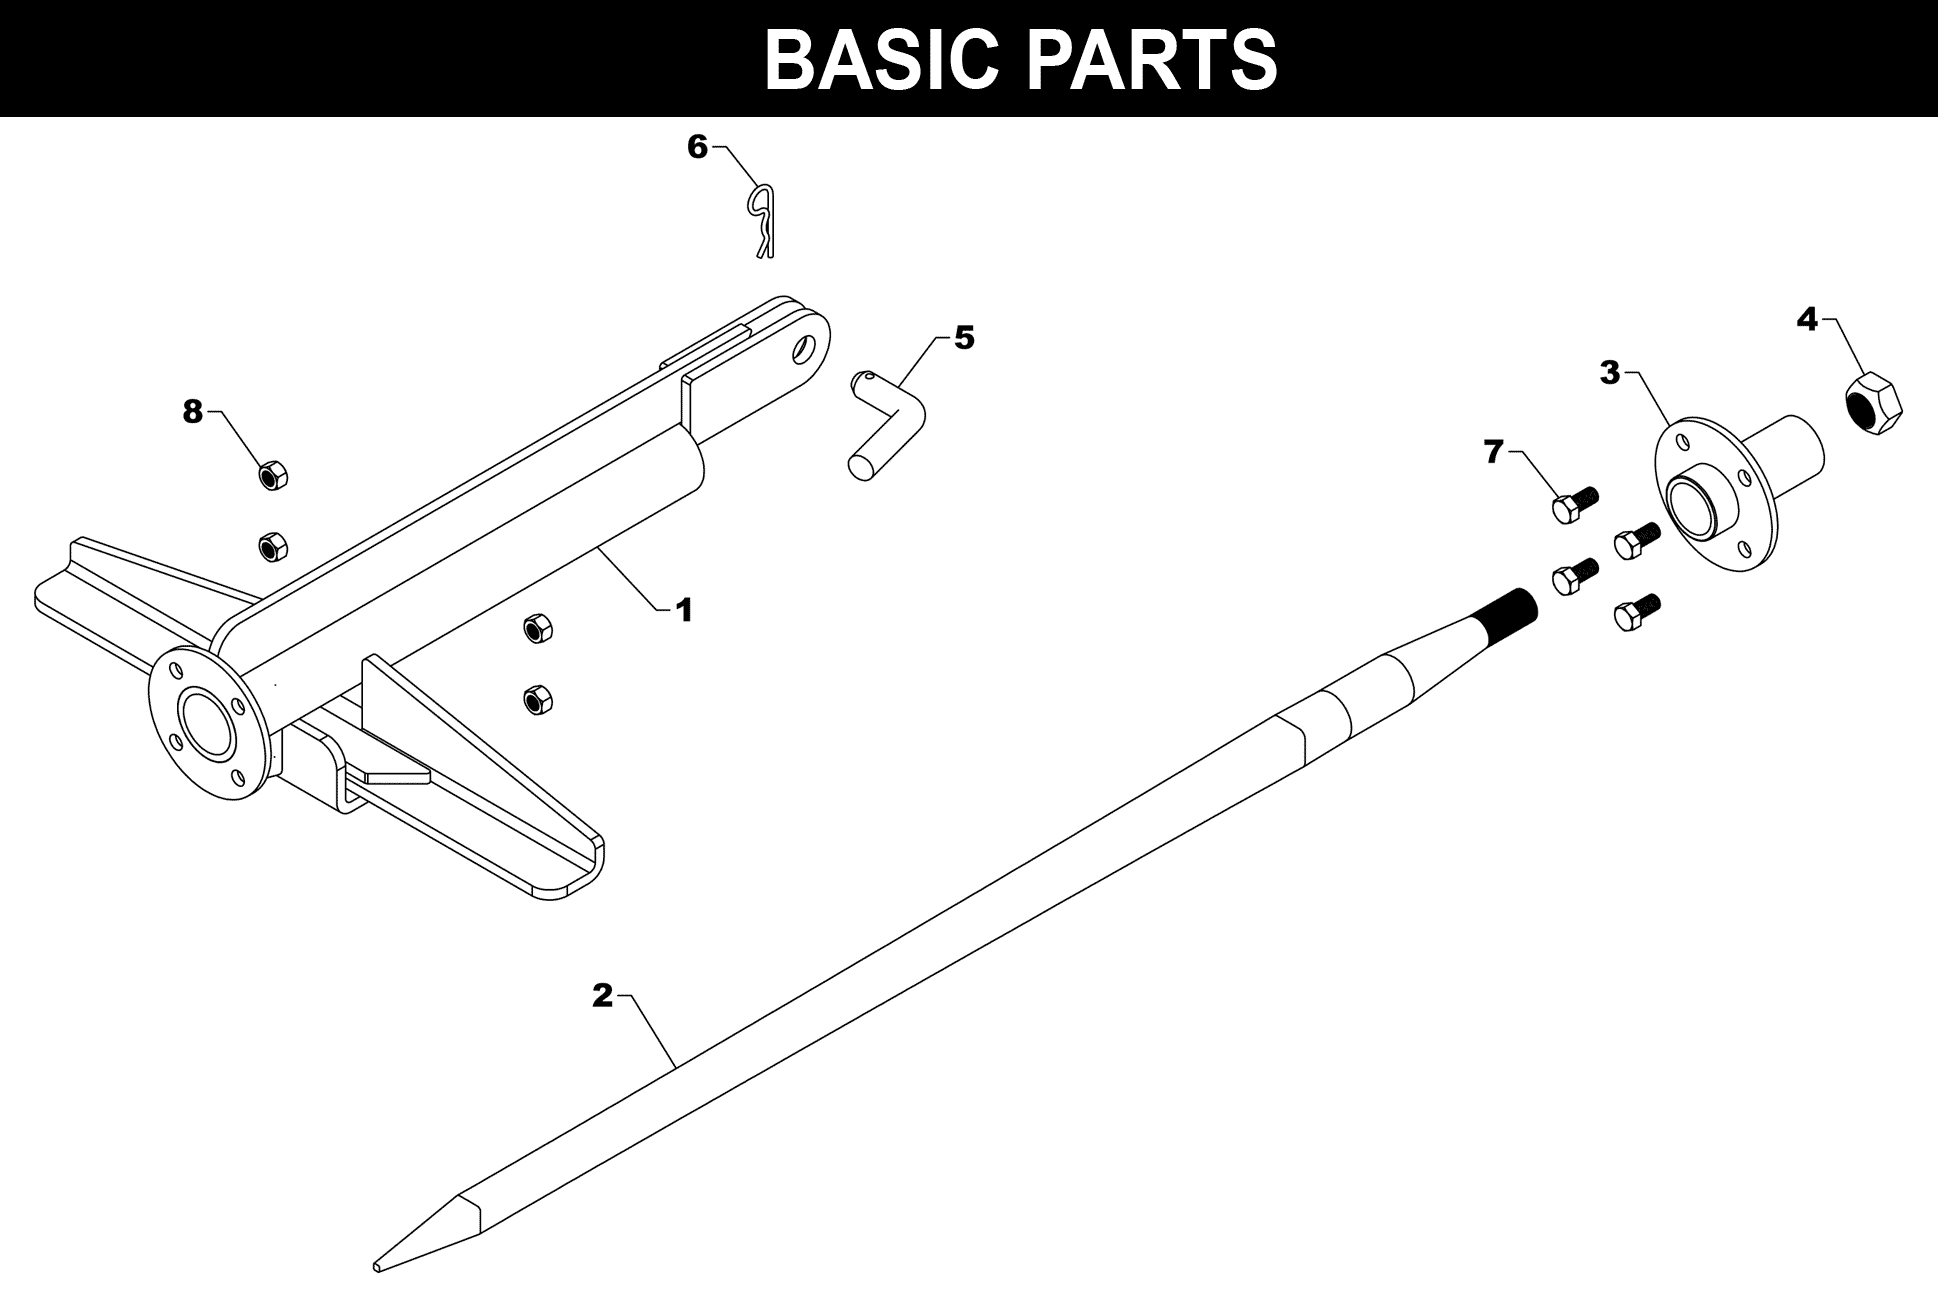 SP-22 Basic Parts